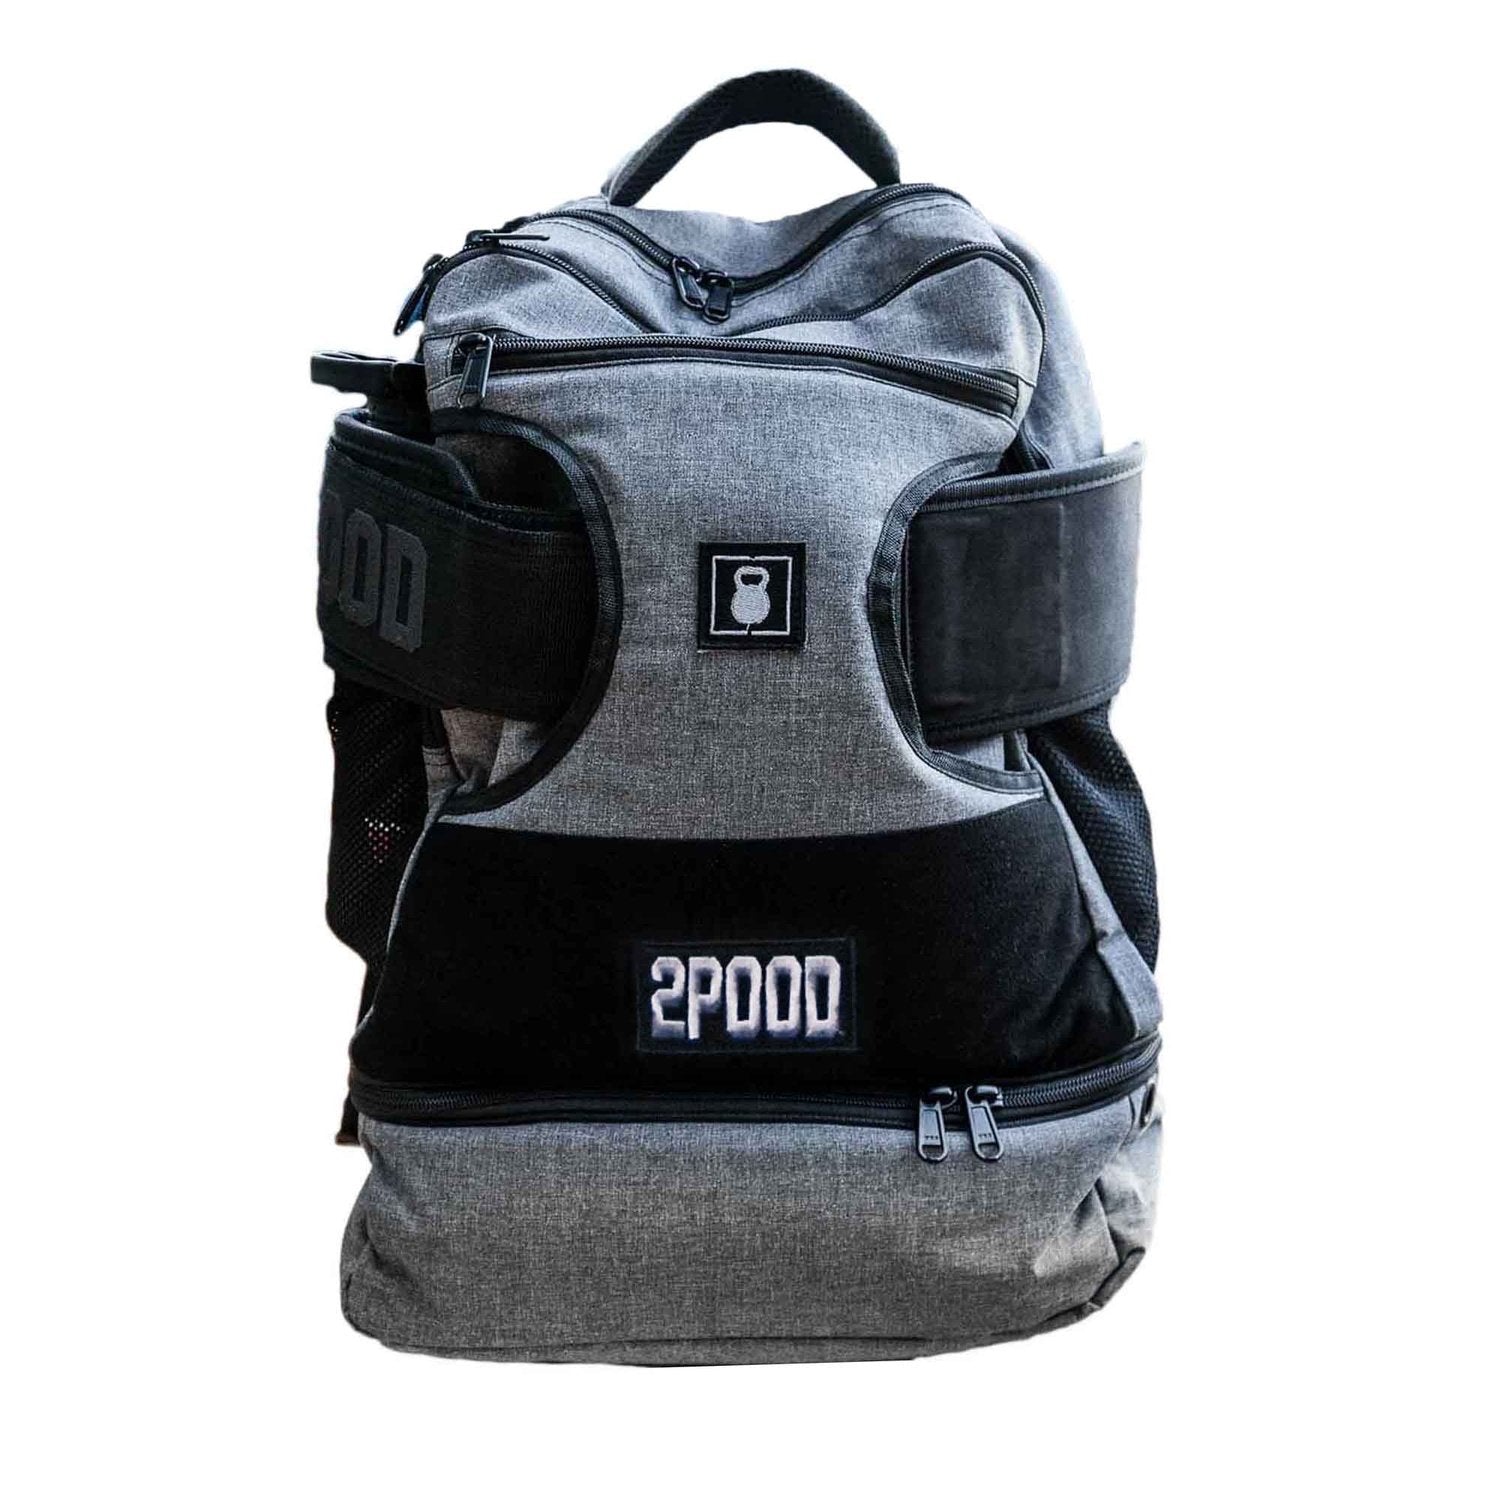 2POOD 2POOD Performance Backpack Regular (mit Gürtelfach) Grau kaufen bei HighPowered.ch